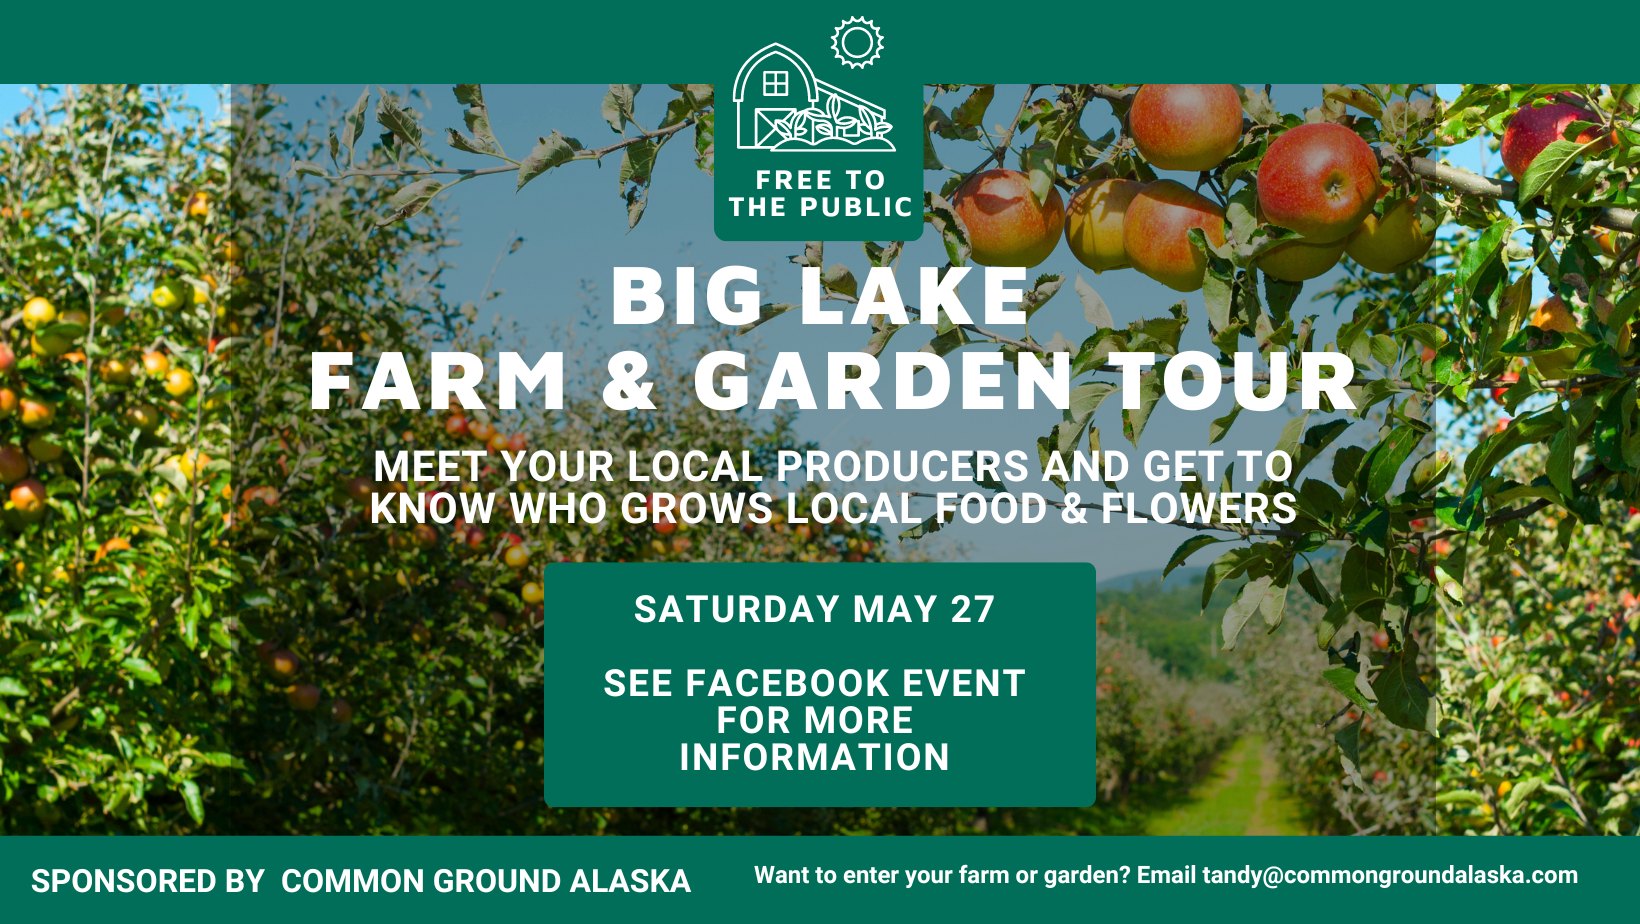 Farm & Garden Tour at Big Lake Farm